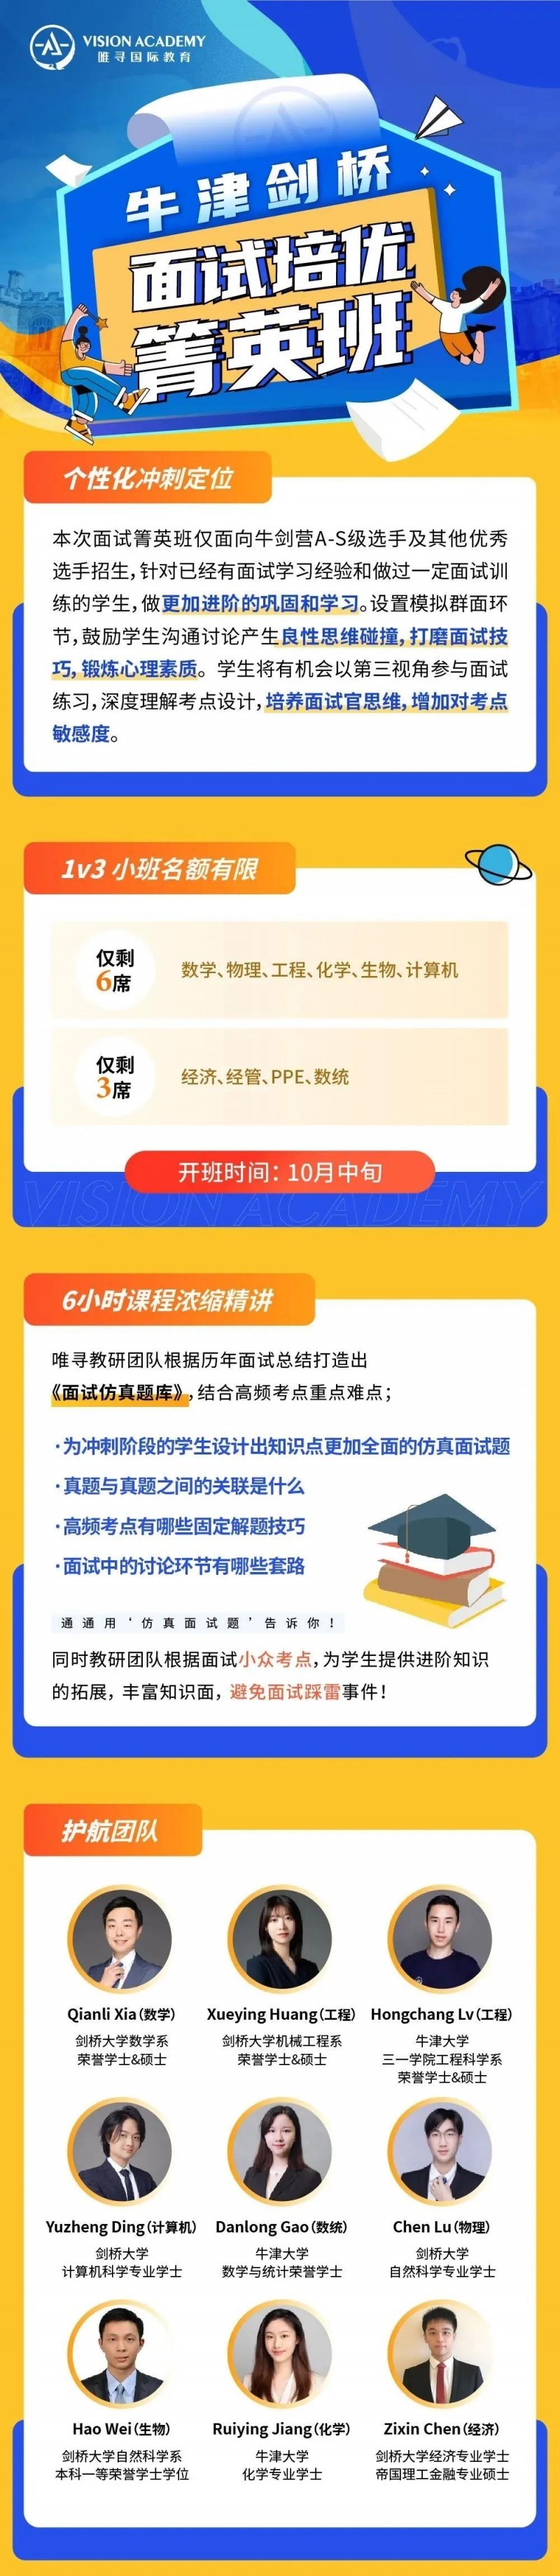 紧急|2020剑桥大学面试邀请邮件解读 上海和香港考生要特别注意内容图片_3